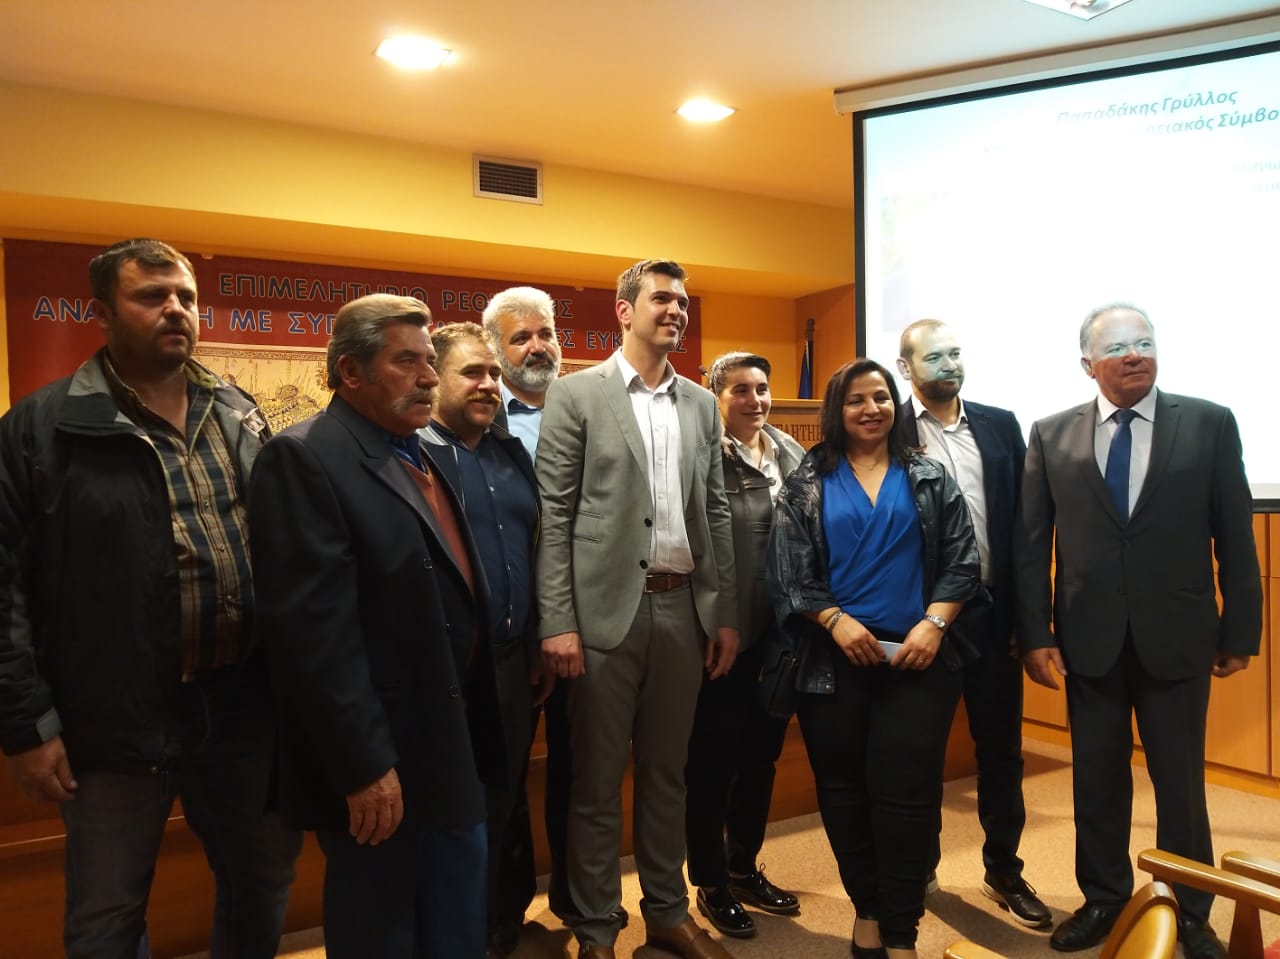 Ο Αλέξανδρος Μαρκογιαννάκης παρουσίασε τους υποψηφίους του συνδυασμού στο Ρέθυμνο